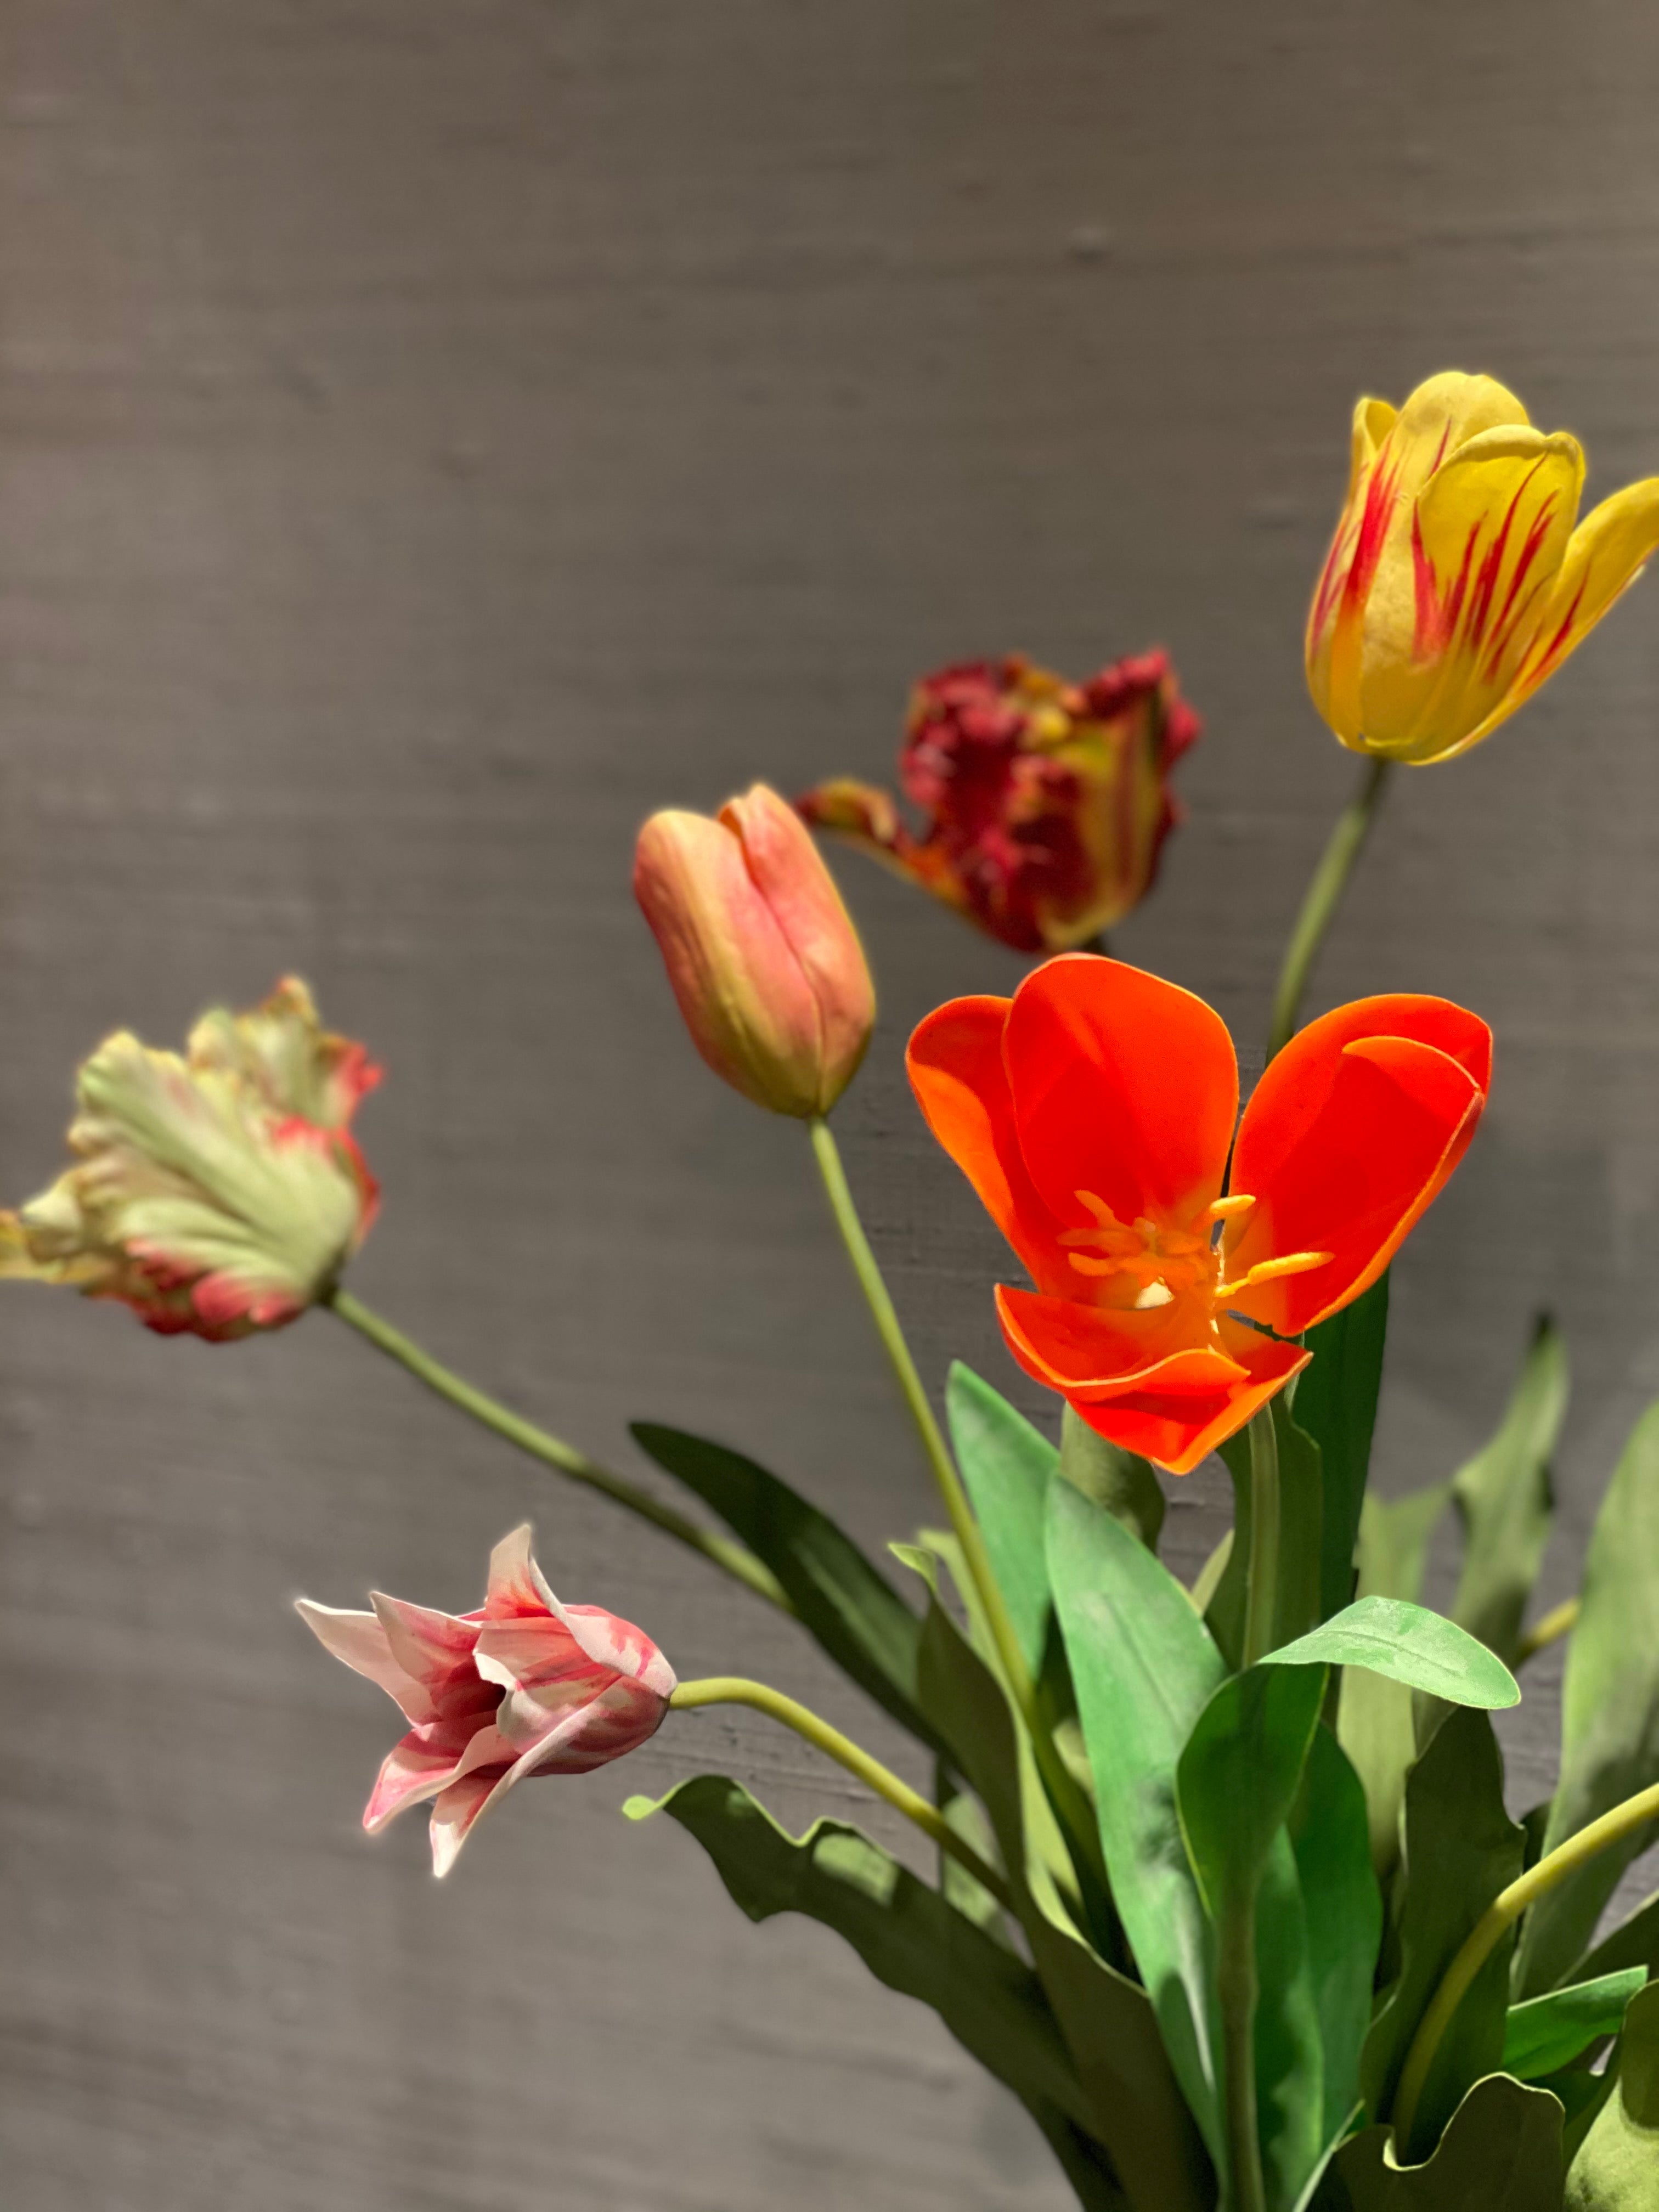 Tulp Oranje / Tulip Orange - Kunst / Artificial